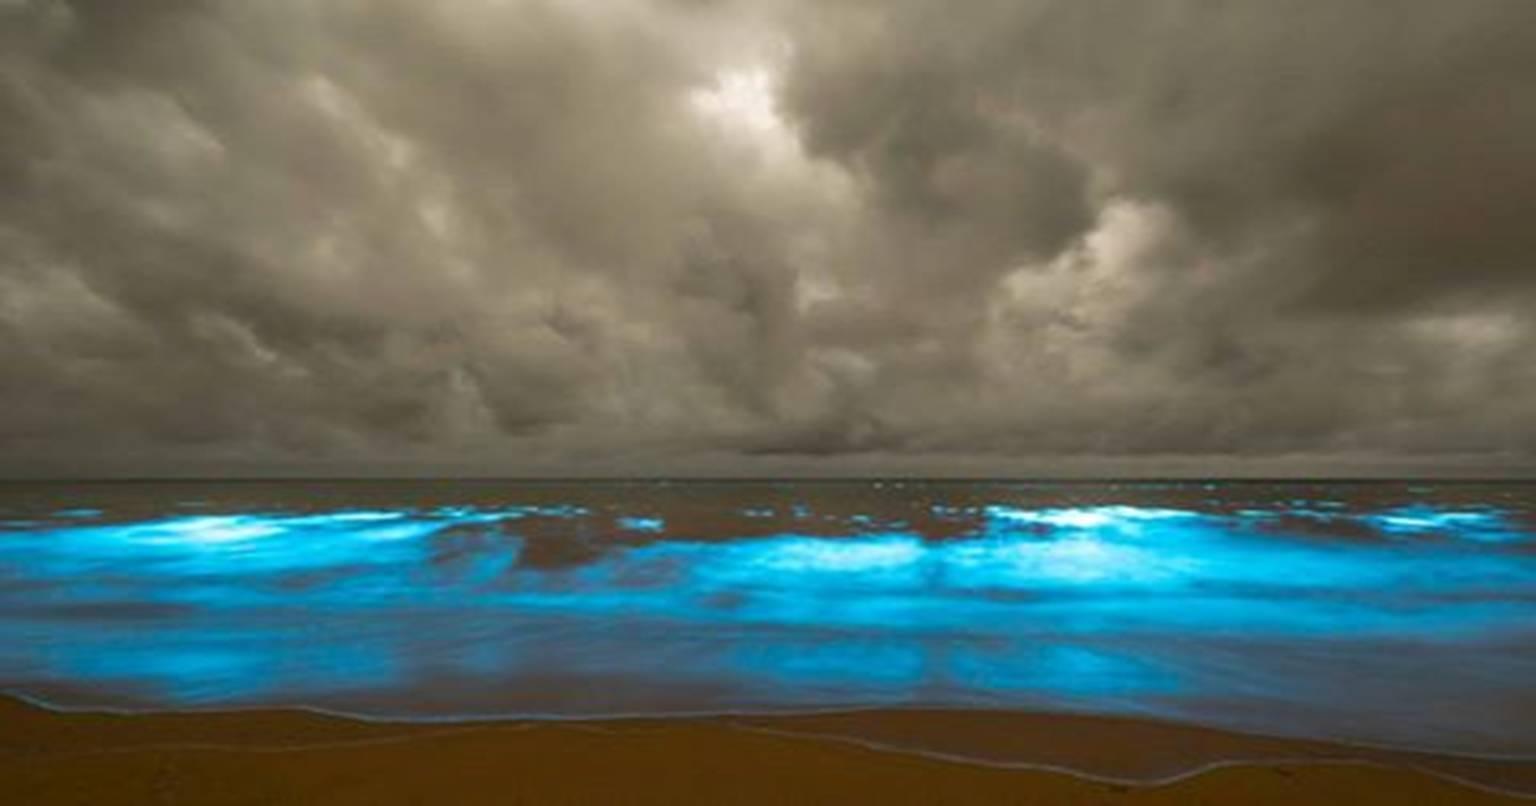 video: ये समुद्र शाम होते ही चमकने लग जाता है, चारों ओर फैल जाता है नीला रंग, ऐसा नजारा पहले कभी नहीं देखा होगा, जानिए क्यों होता है ऐसा!